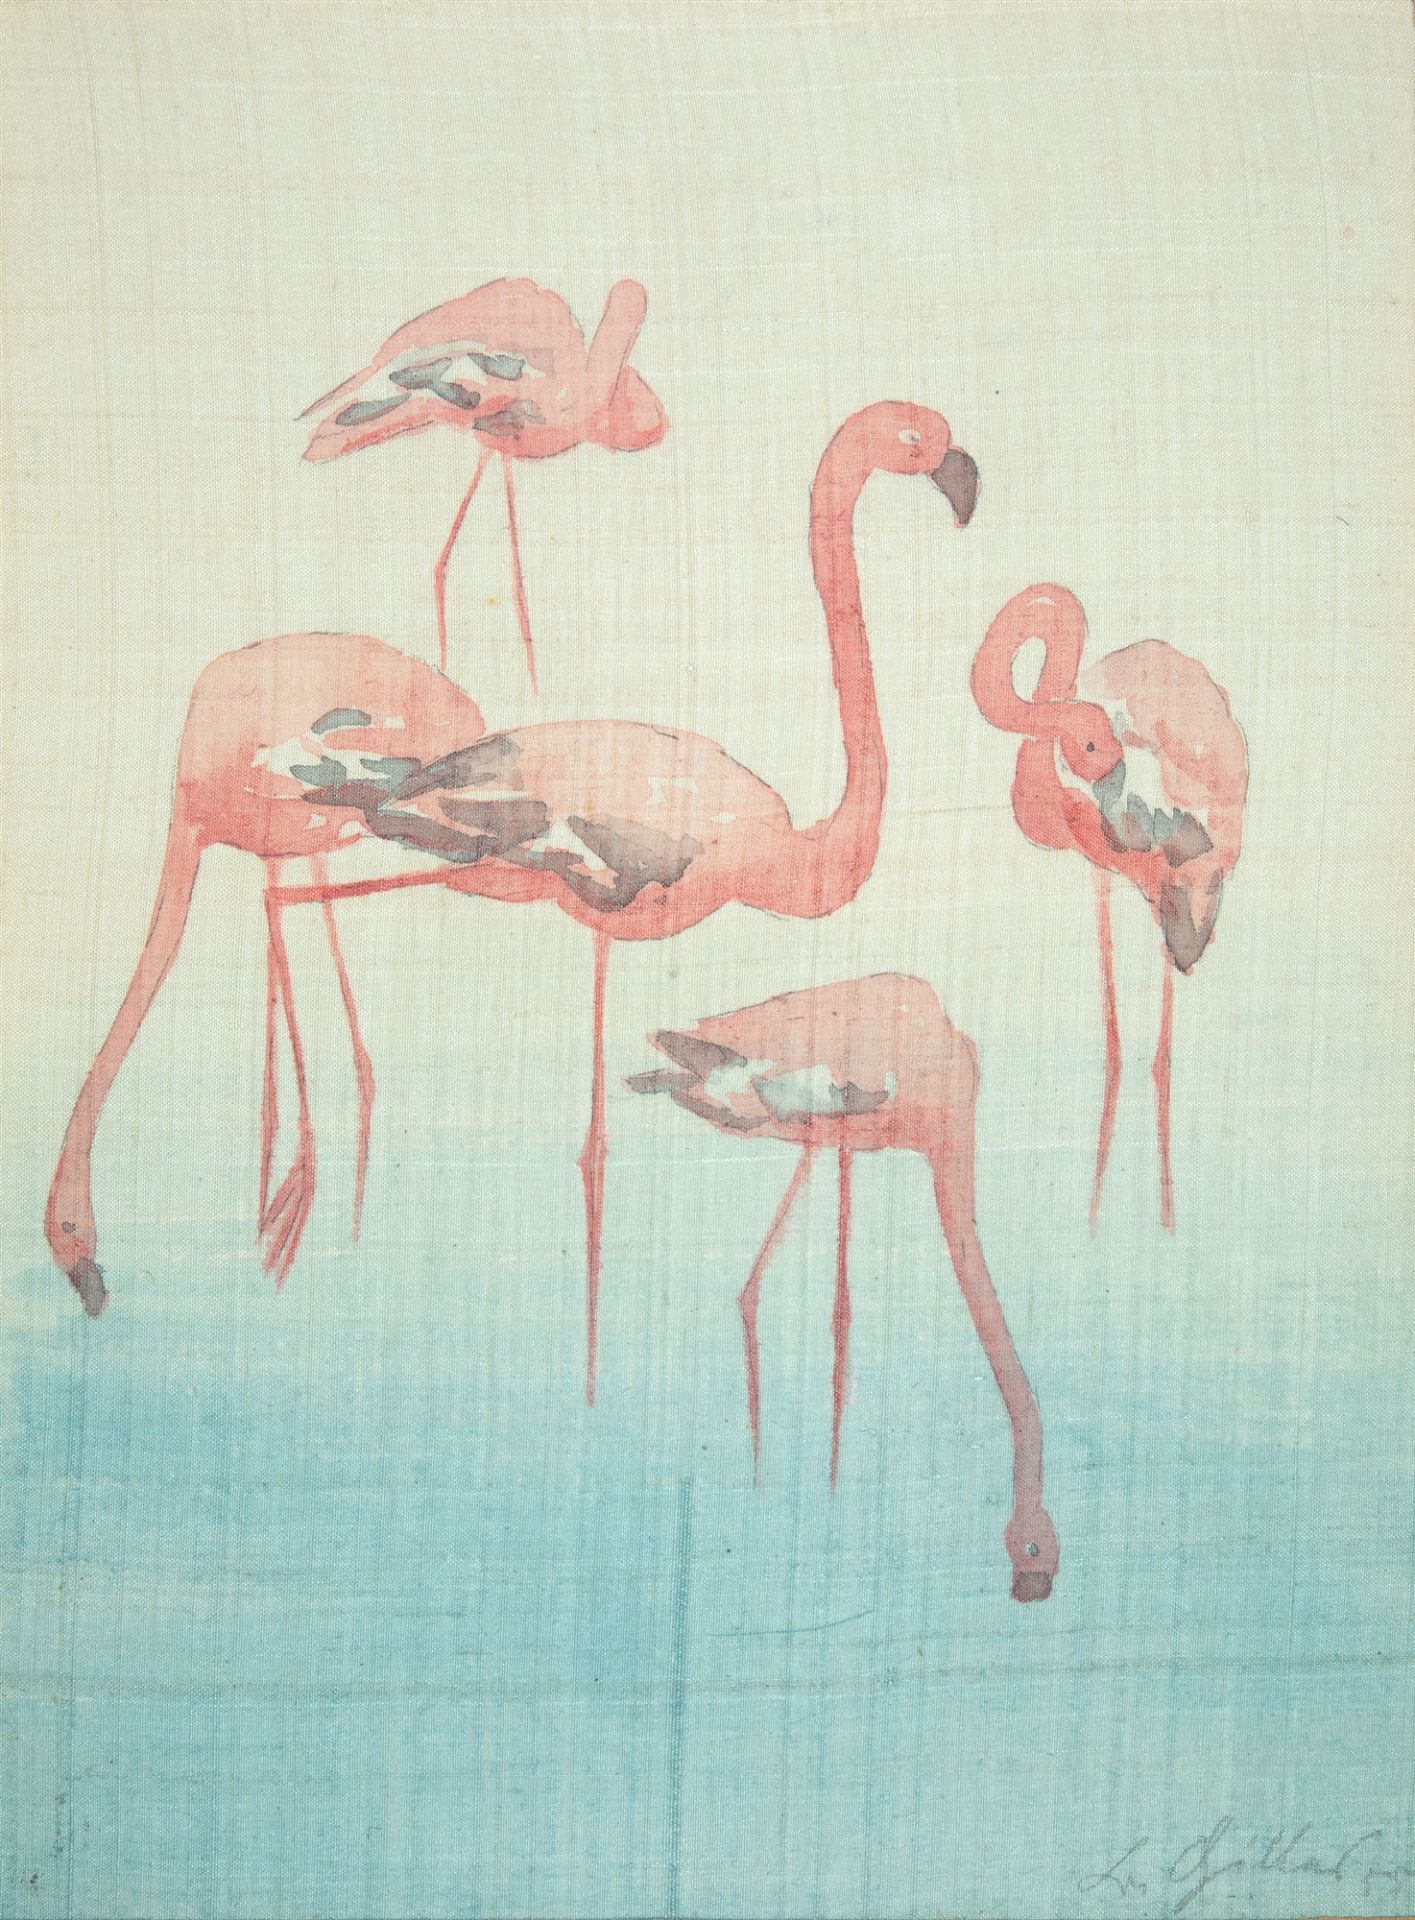 Barthel Gilles. Tier-Studie, fünf Flamingos. Aquarell auf Seide.